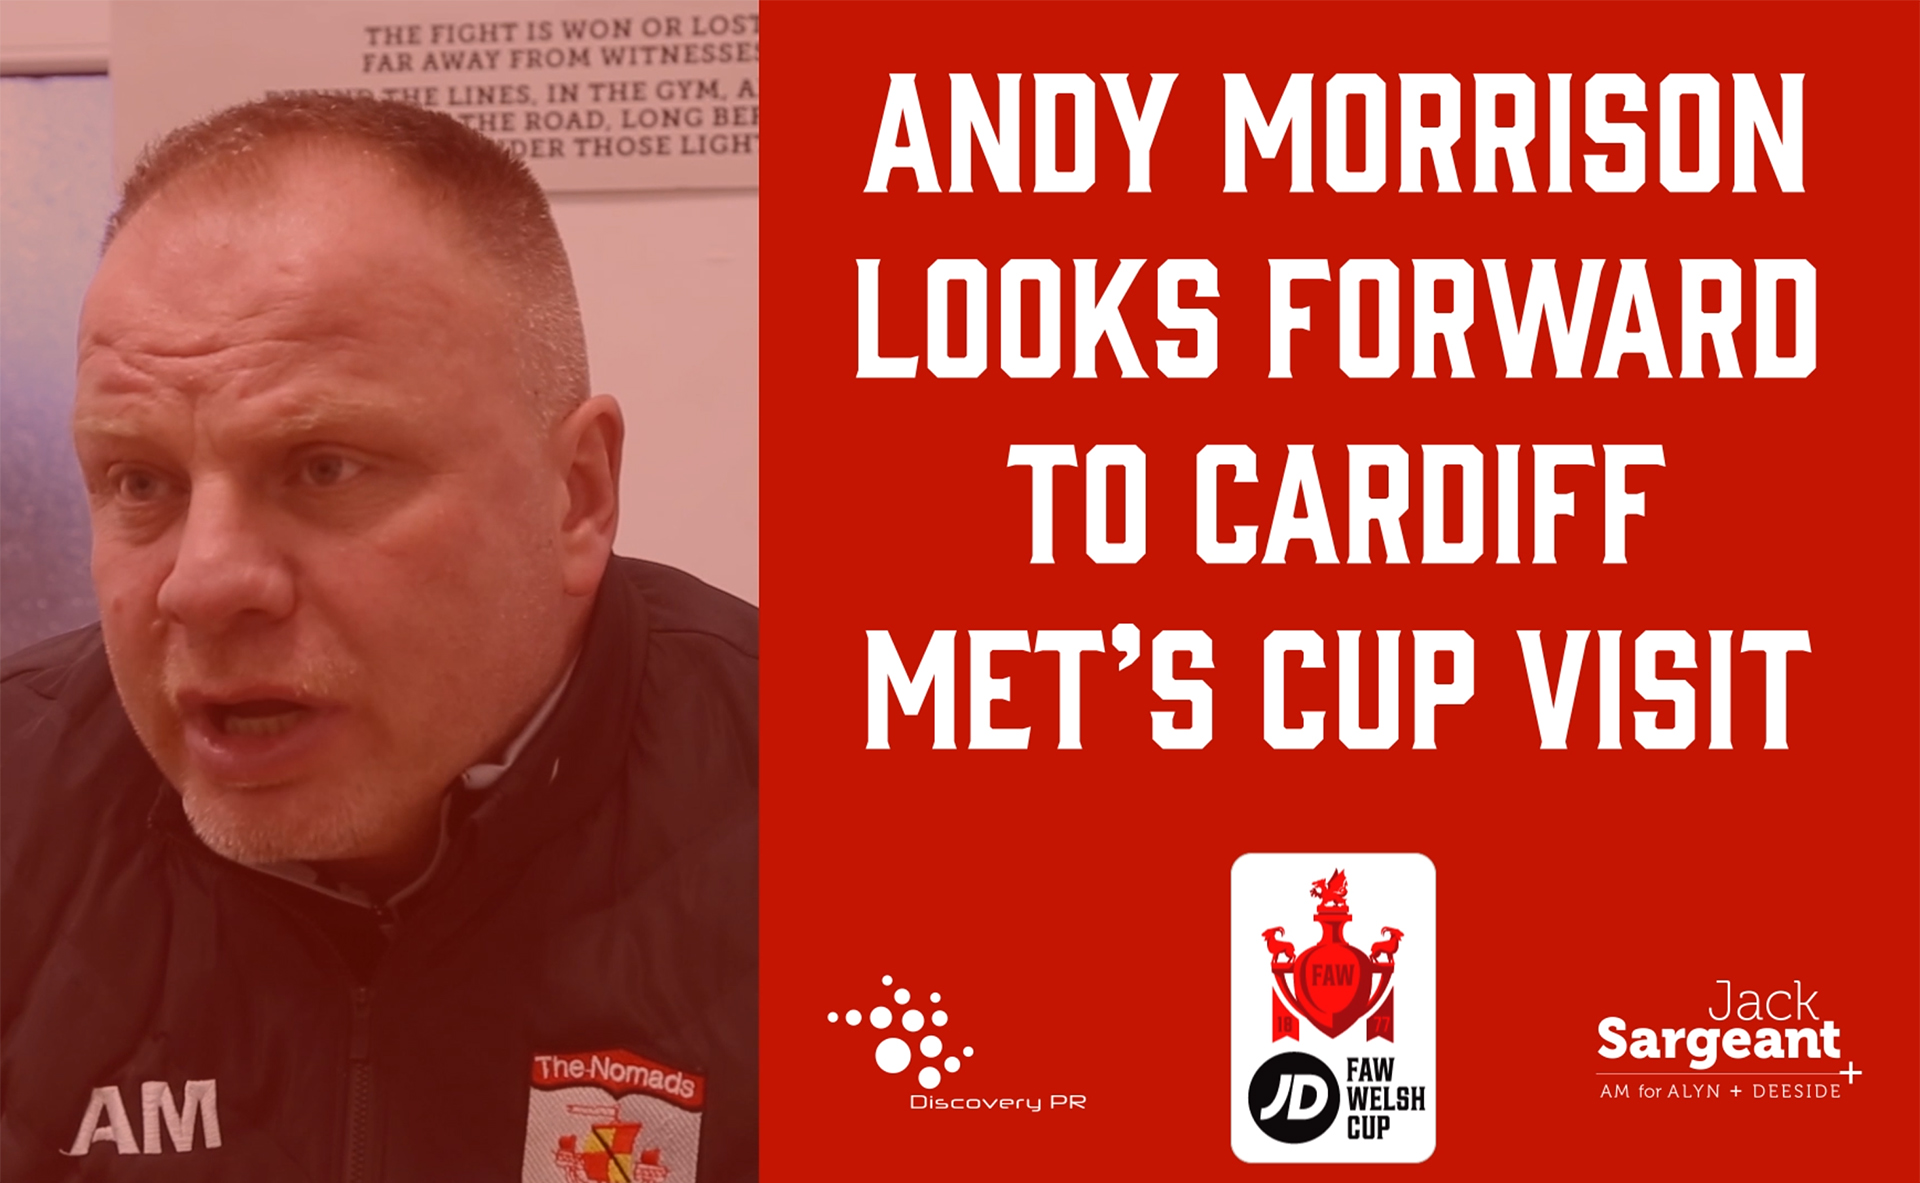 Andy Morrison speaks to Nik Mesney ahead of Saturday's JD Welsh Cup game